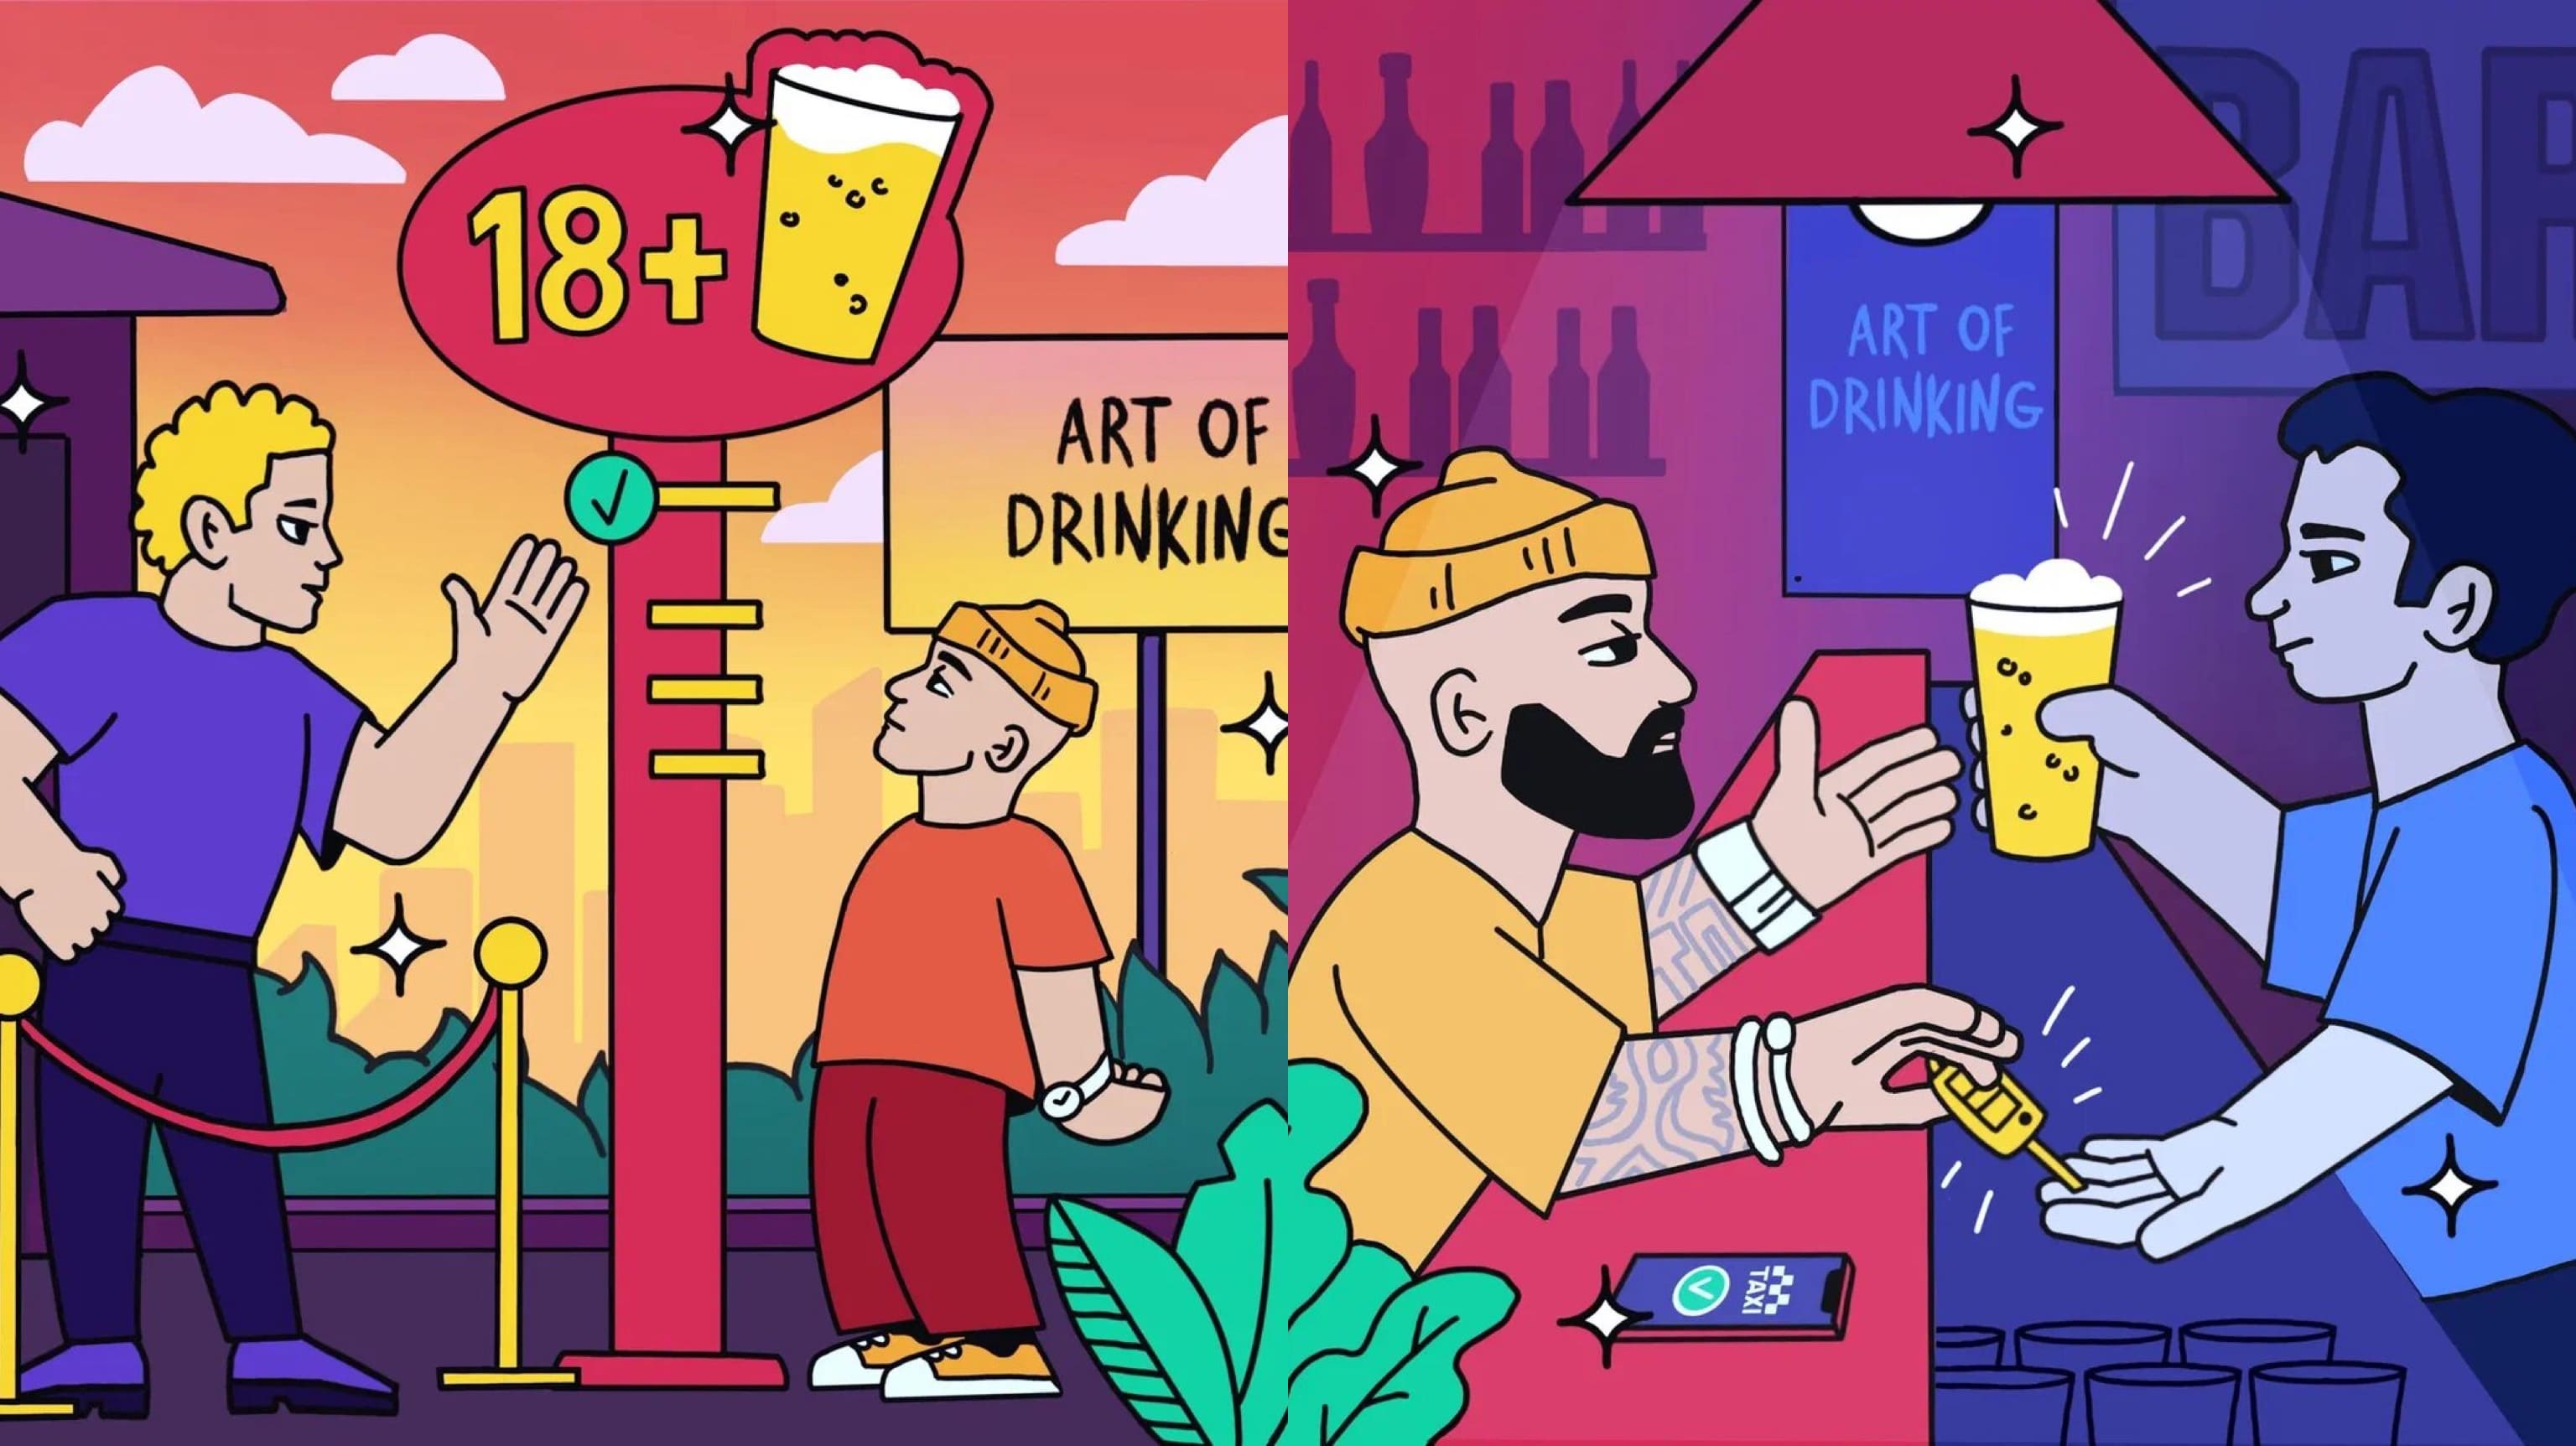 Компания ABInBevEfes поп арт художник АлександрТито проект ARTOFDRINKING деньпива пиво алкоголь GBRD